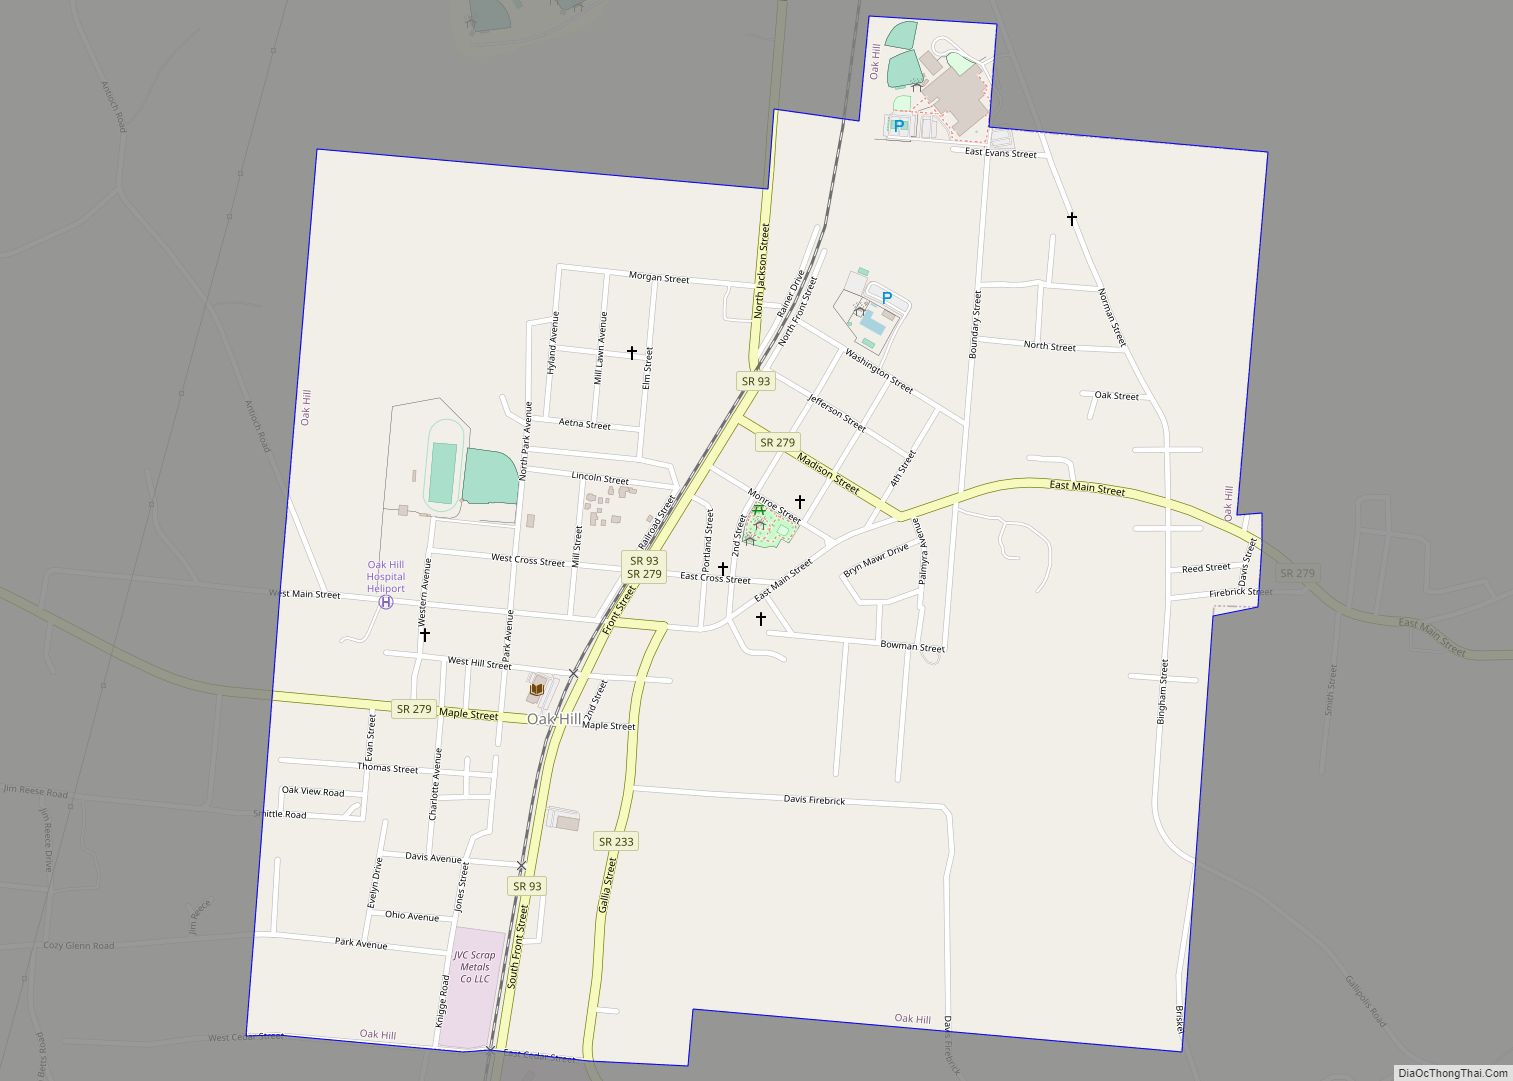 Map of Oak Hill village, Ohio